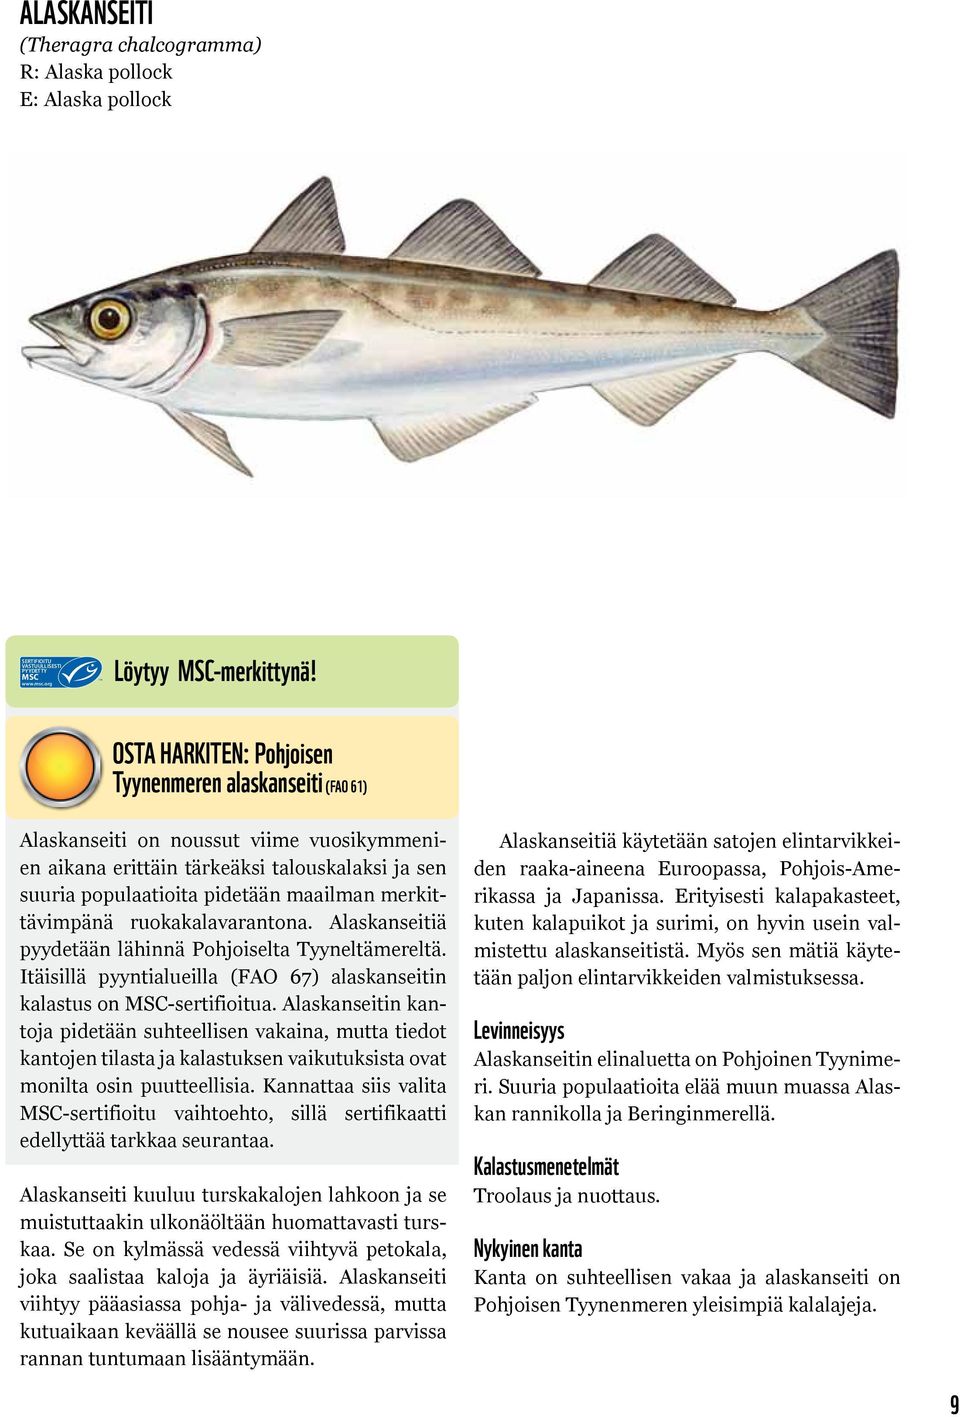 merkittävimpänä ruokakalavarantona. Alaskanseitiä pyydetään lähinnä Pohjoiselta Tyyneltämereltä. Itäisillä pyyntialueilla (FAO 67) alaskanseitin kalastus on MSC-sertifioitua.